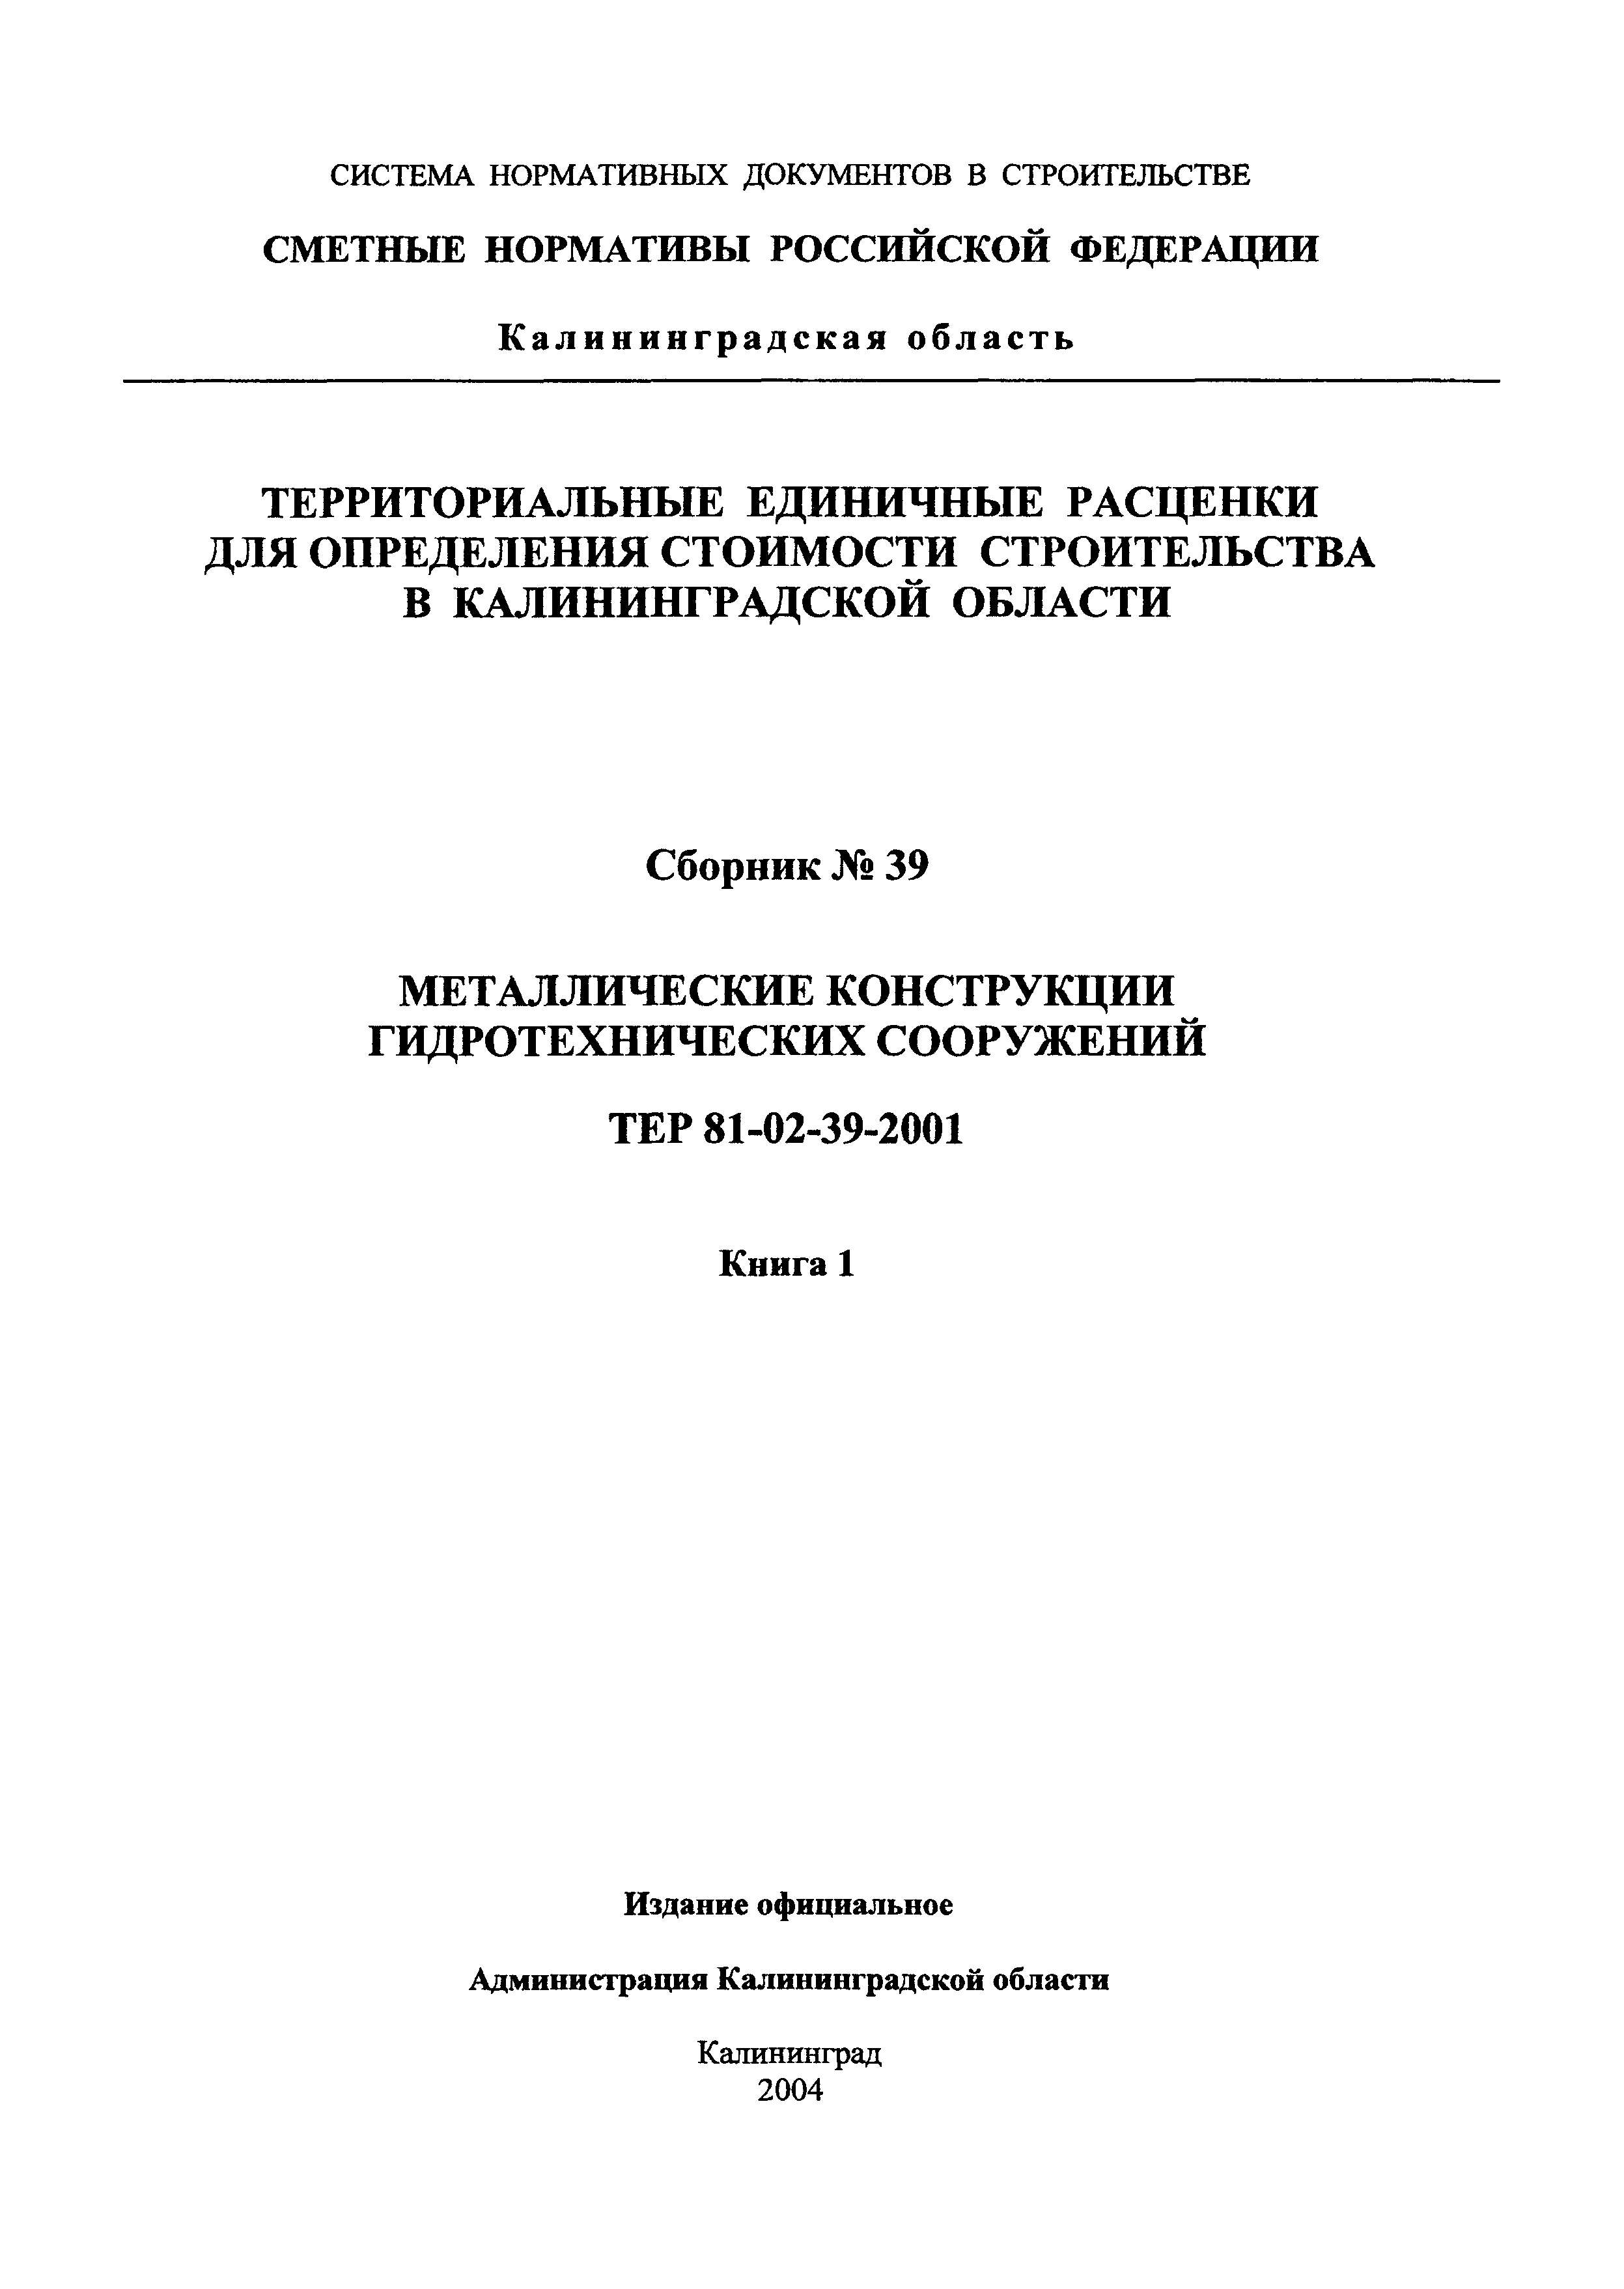 ТЕР Калининградская область 2001-39